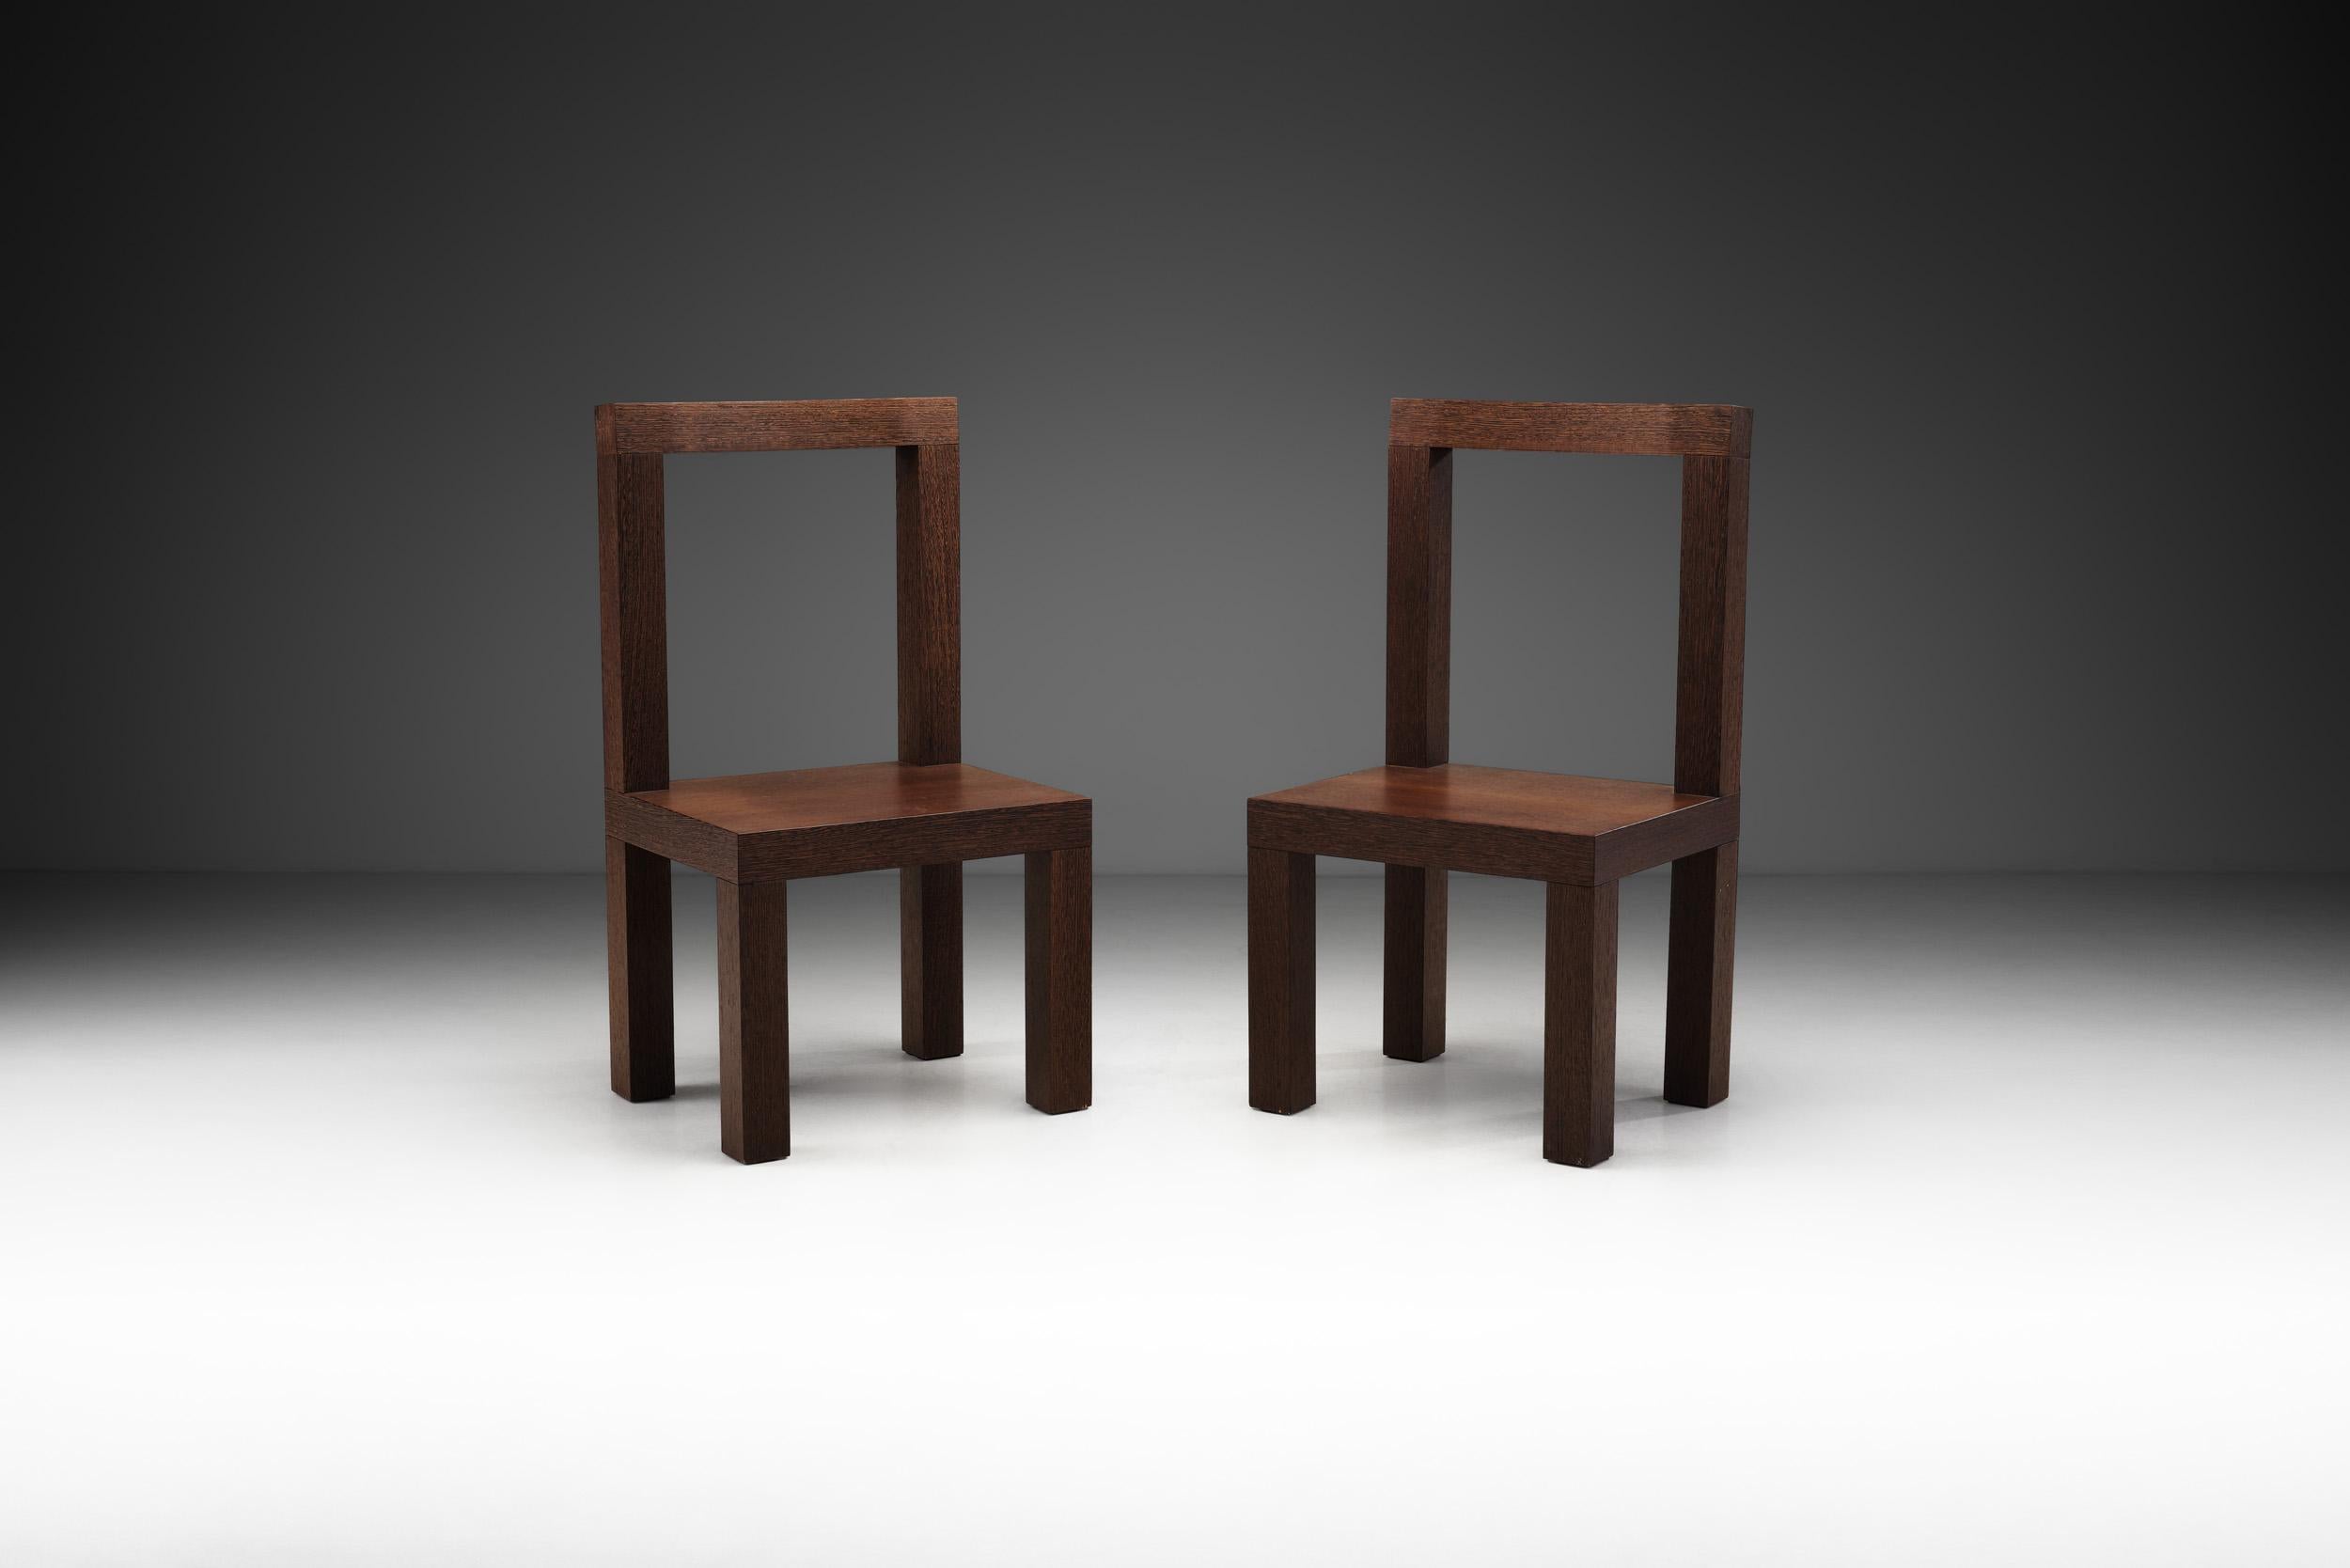 Diese von Giorgio Armani entworfenen Beistellstühle weisen die gleiche elegante Ästhetik auf, für die der Designer bekannt ist. Die Präzision der Konstruktion ist offensichtlich, und das Ergebnis wirkt sowohl modern als auch zeitgemäß.

Mit